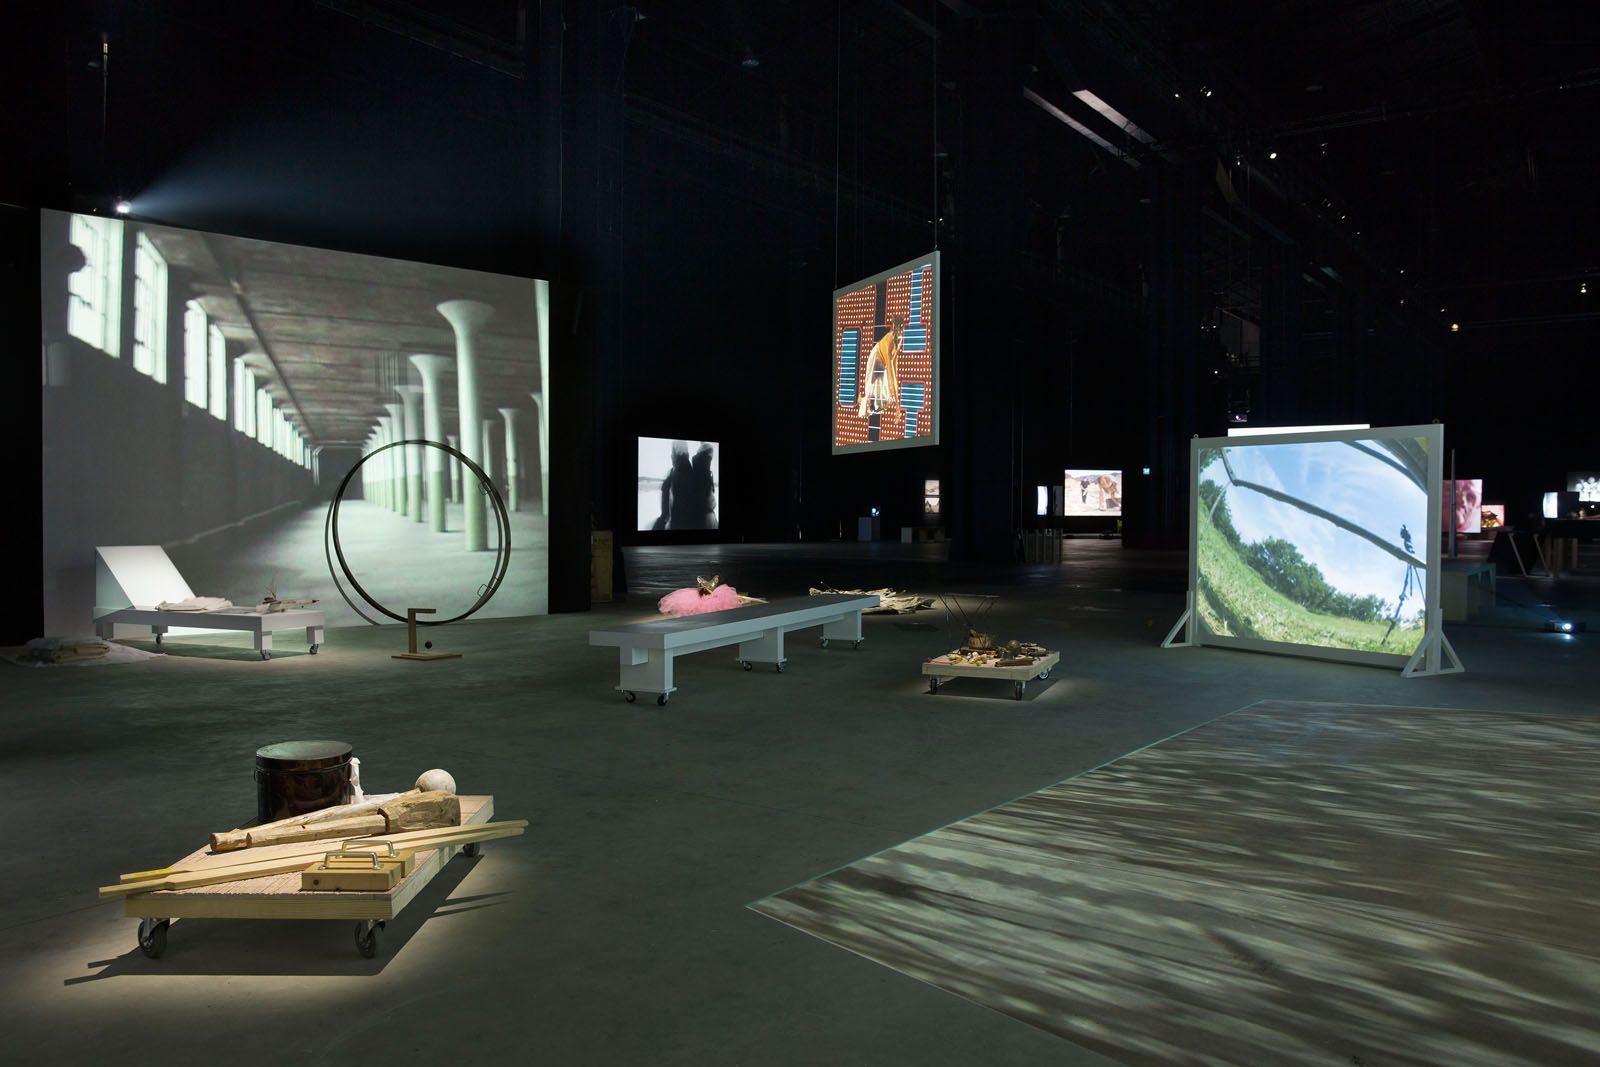 Joan Jonas, Light Time Tales, 2014, vista de instalación Fondazione HangarBicocca, Milán. Foto: Agostino Osio. Cortesía: Fondazione HangarBicocca, Milán